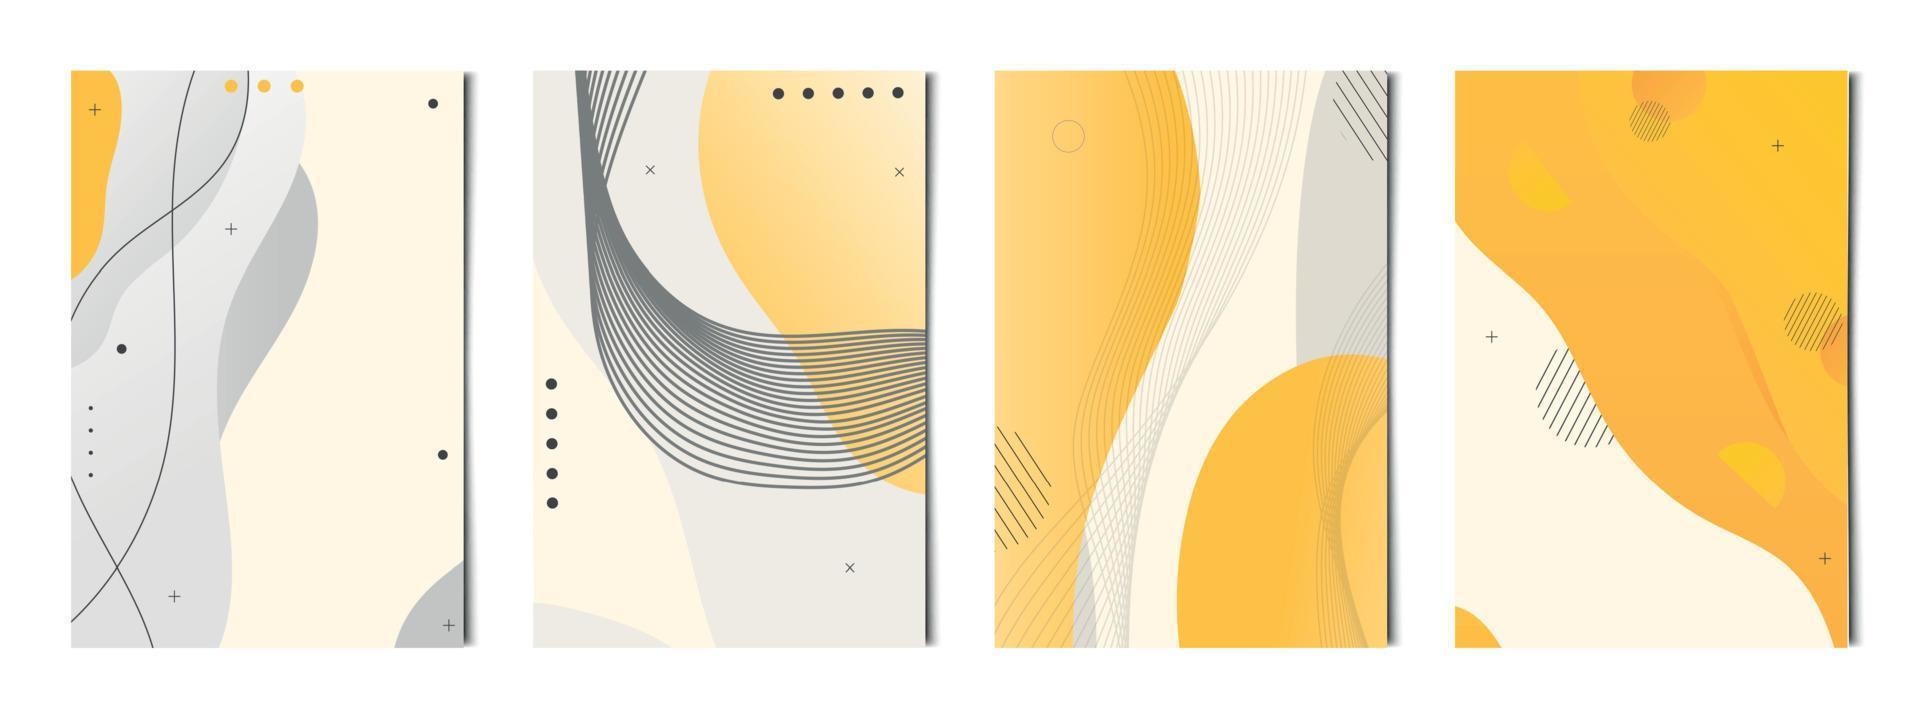 ensemble de 4 arrière-plans géométriques abstraits blancs orange, modèles pour la publicité, cartes de visite, textures - vecteur